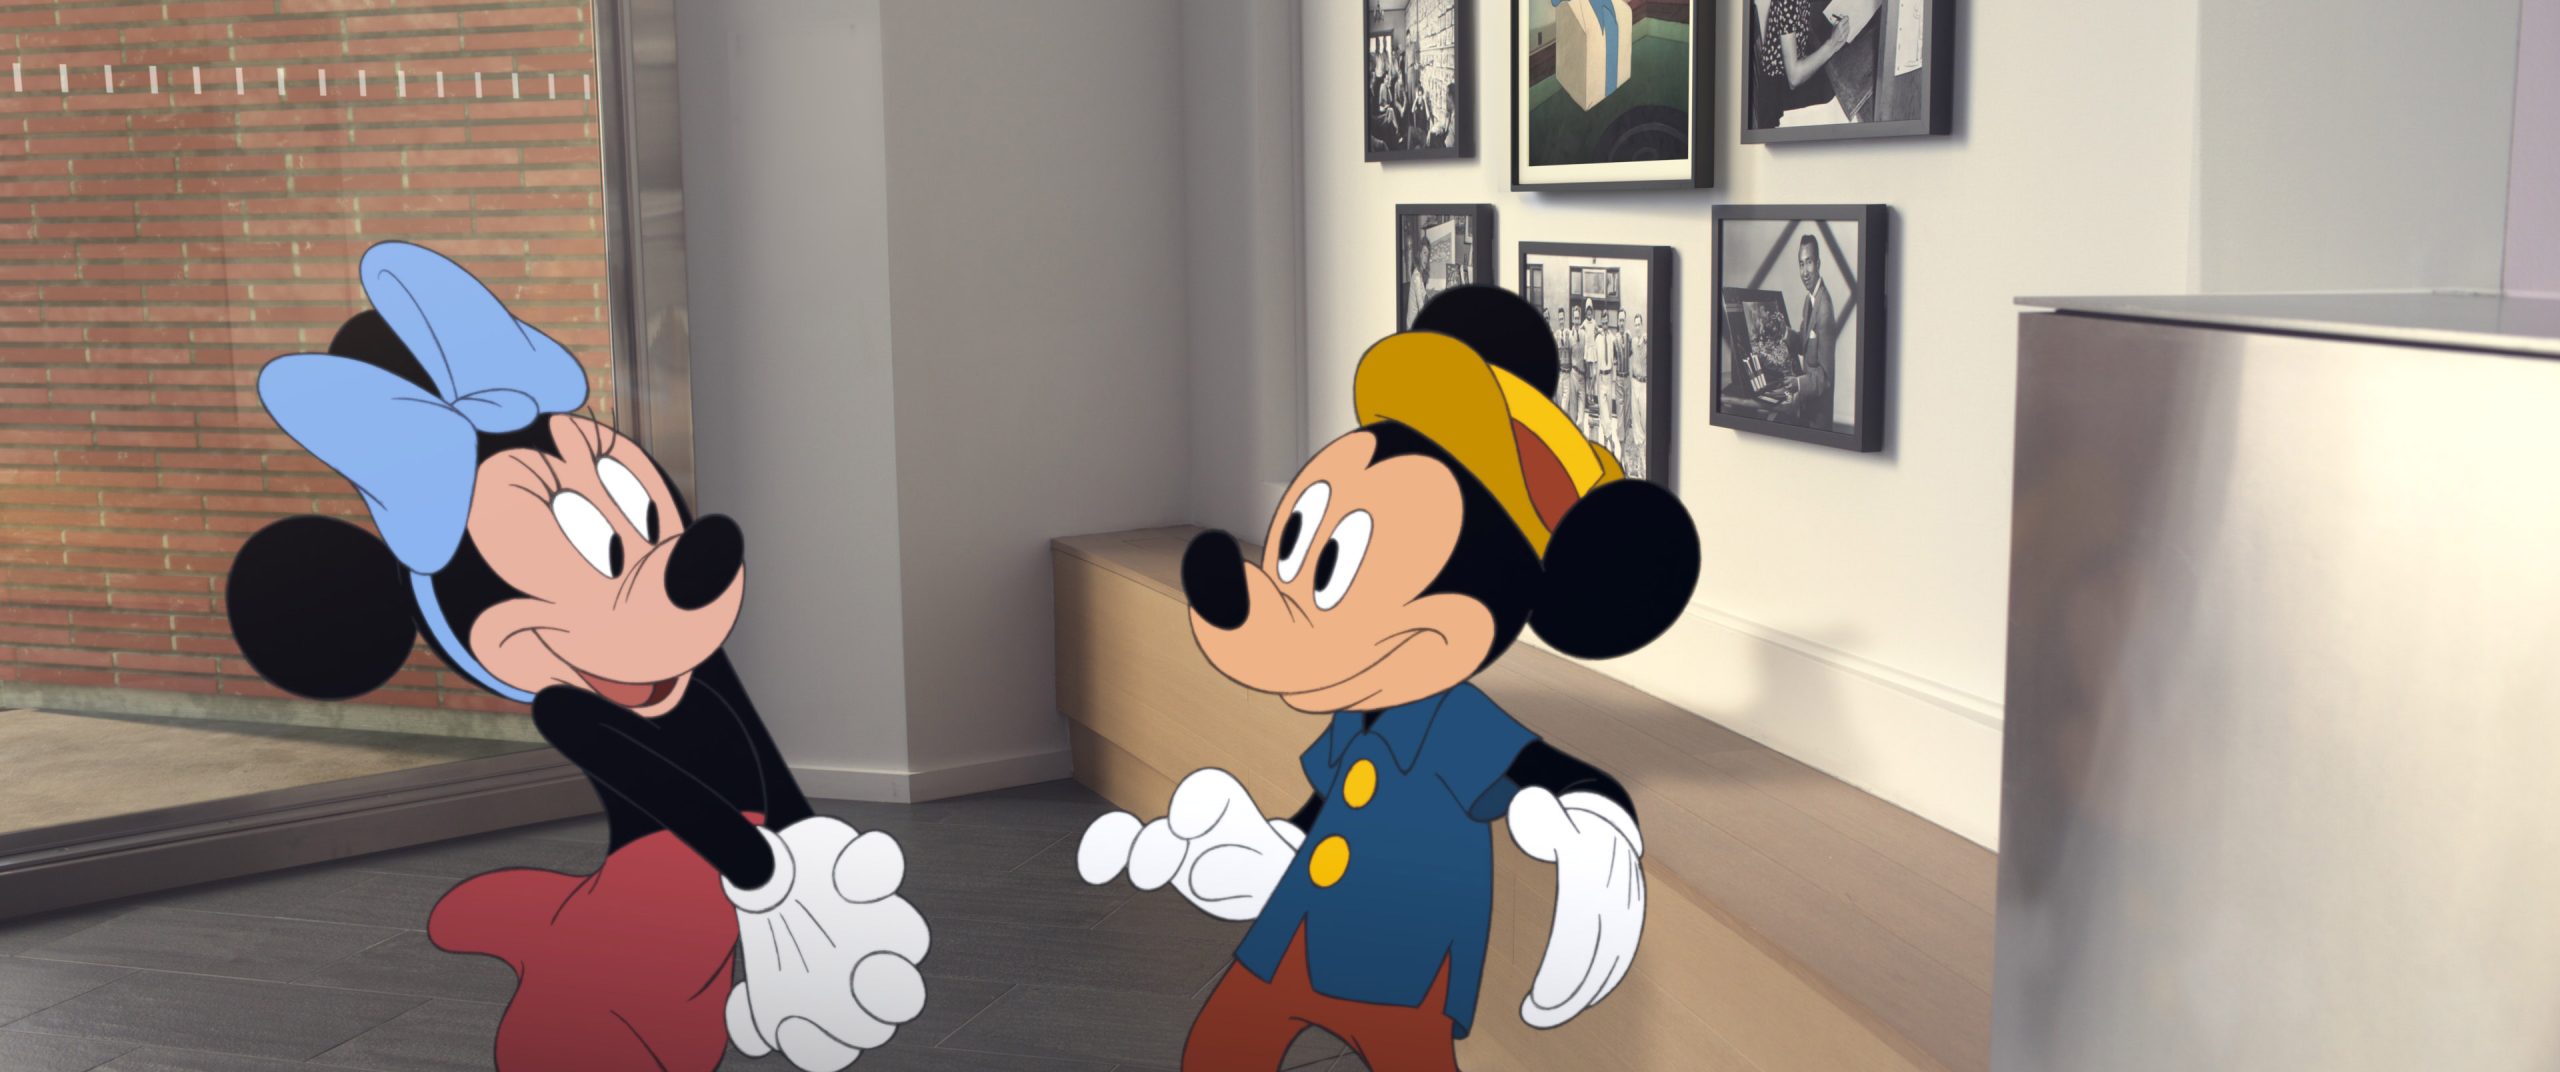 Los 100 años de Disney llegan con un corto y música